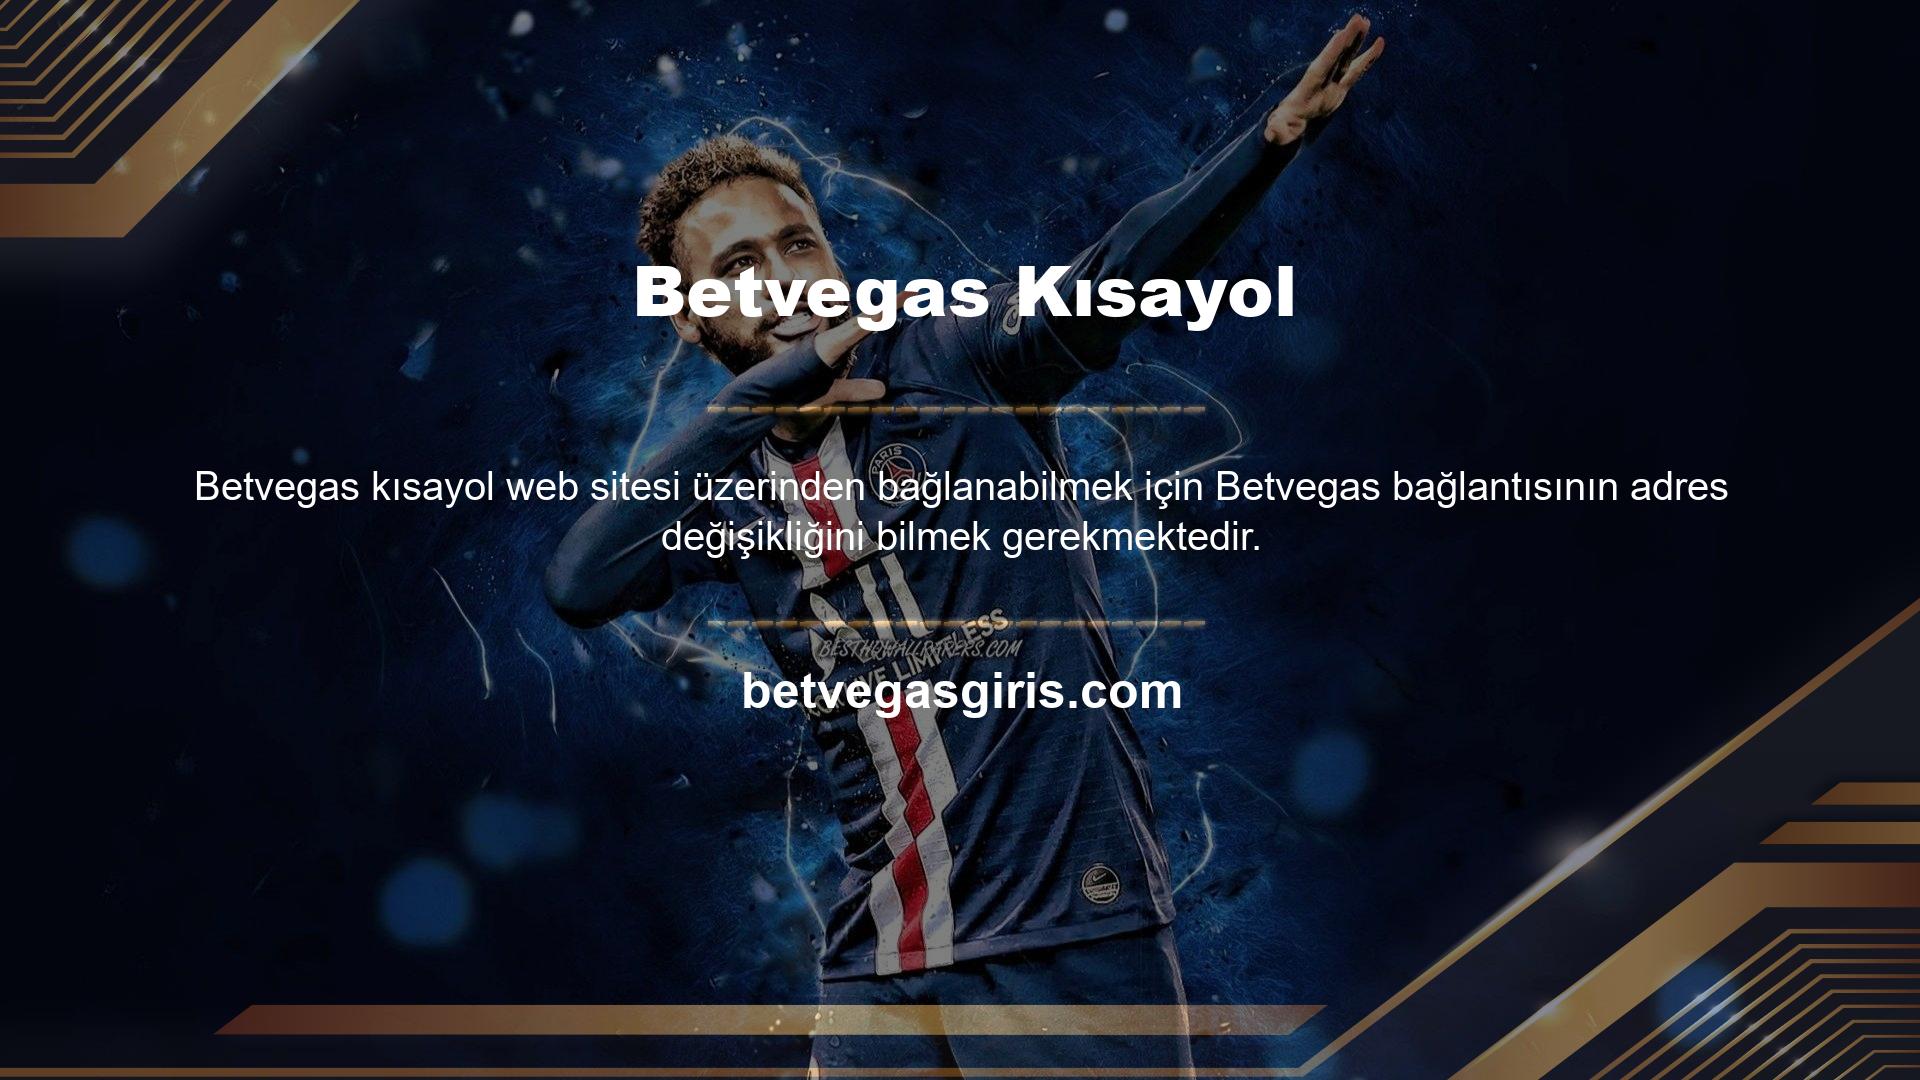 Betvegas pazarındaki diğer tüm bahis siteleri adreslerini düzenli olarak günceller